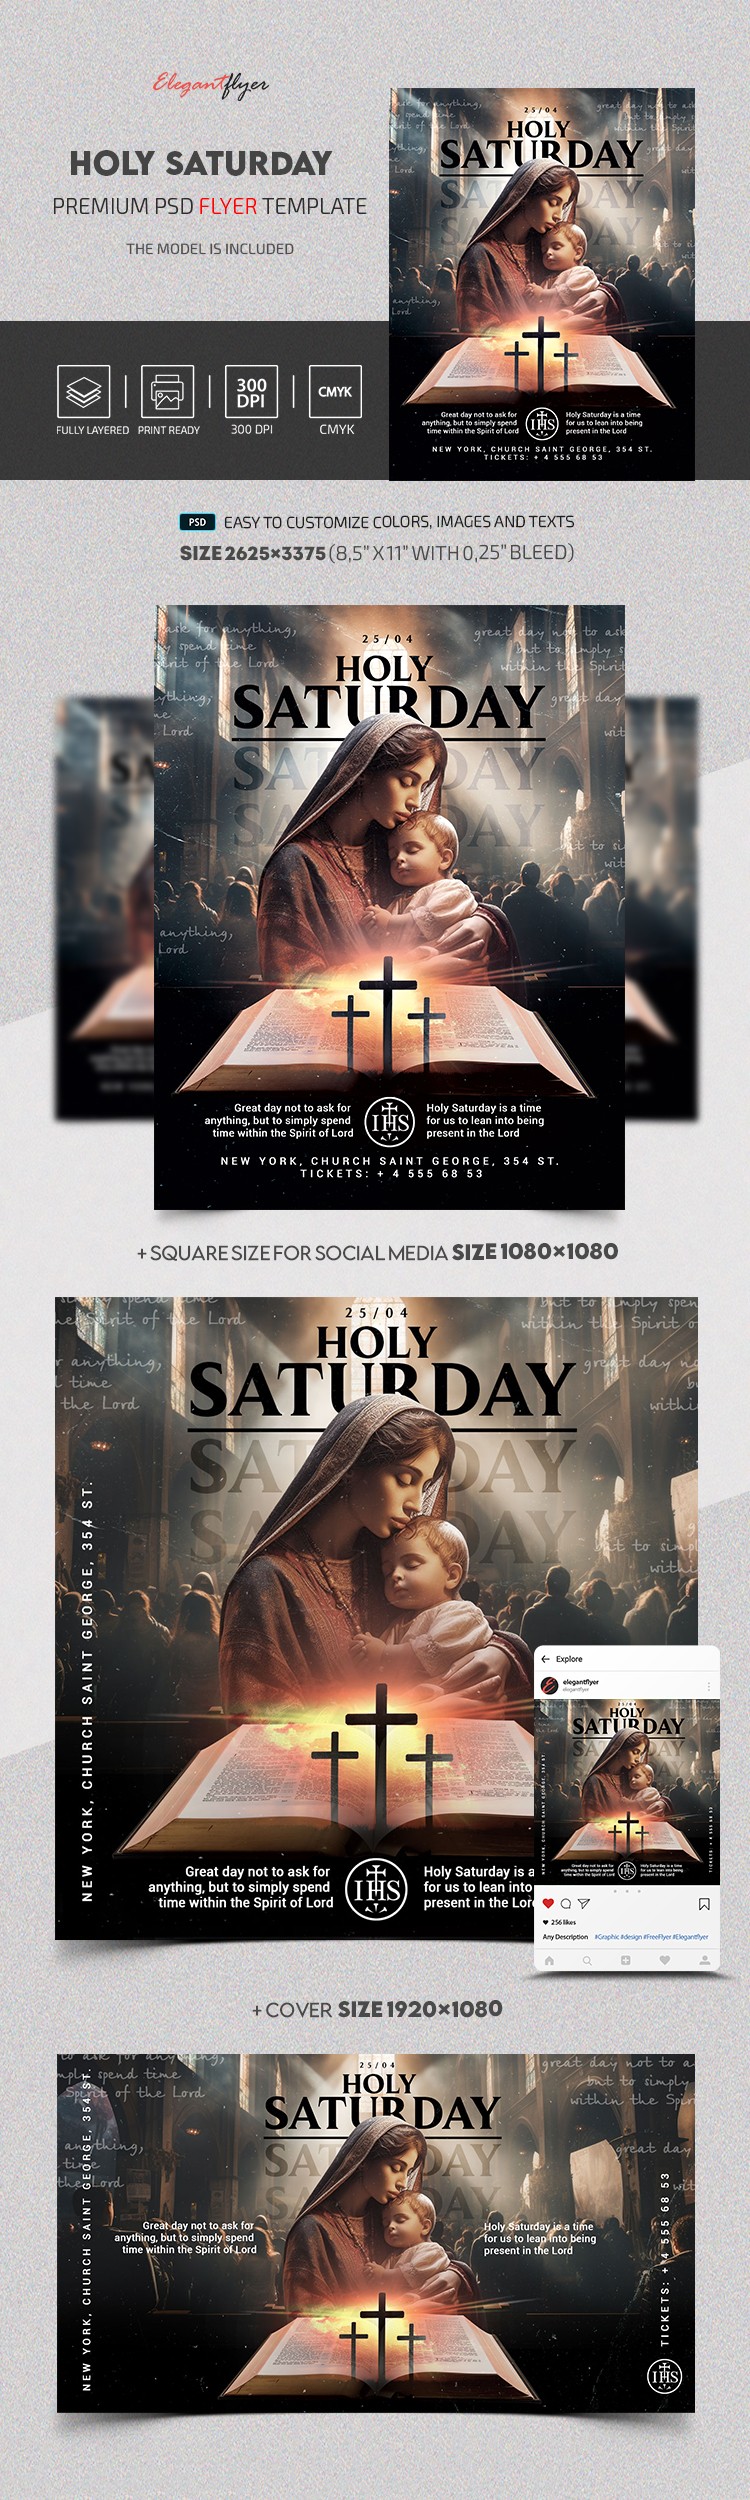 Holy Saturday by ElegantFlyer